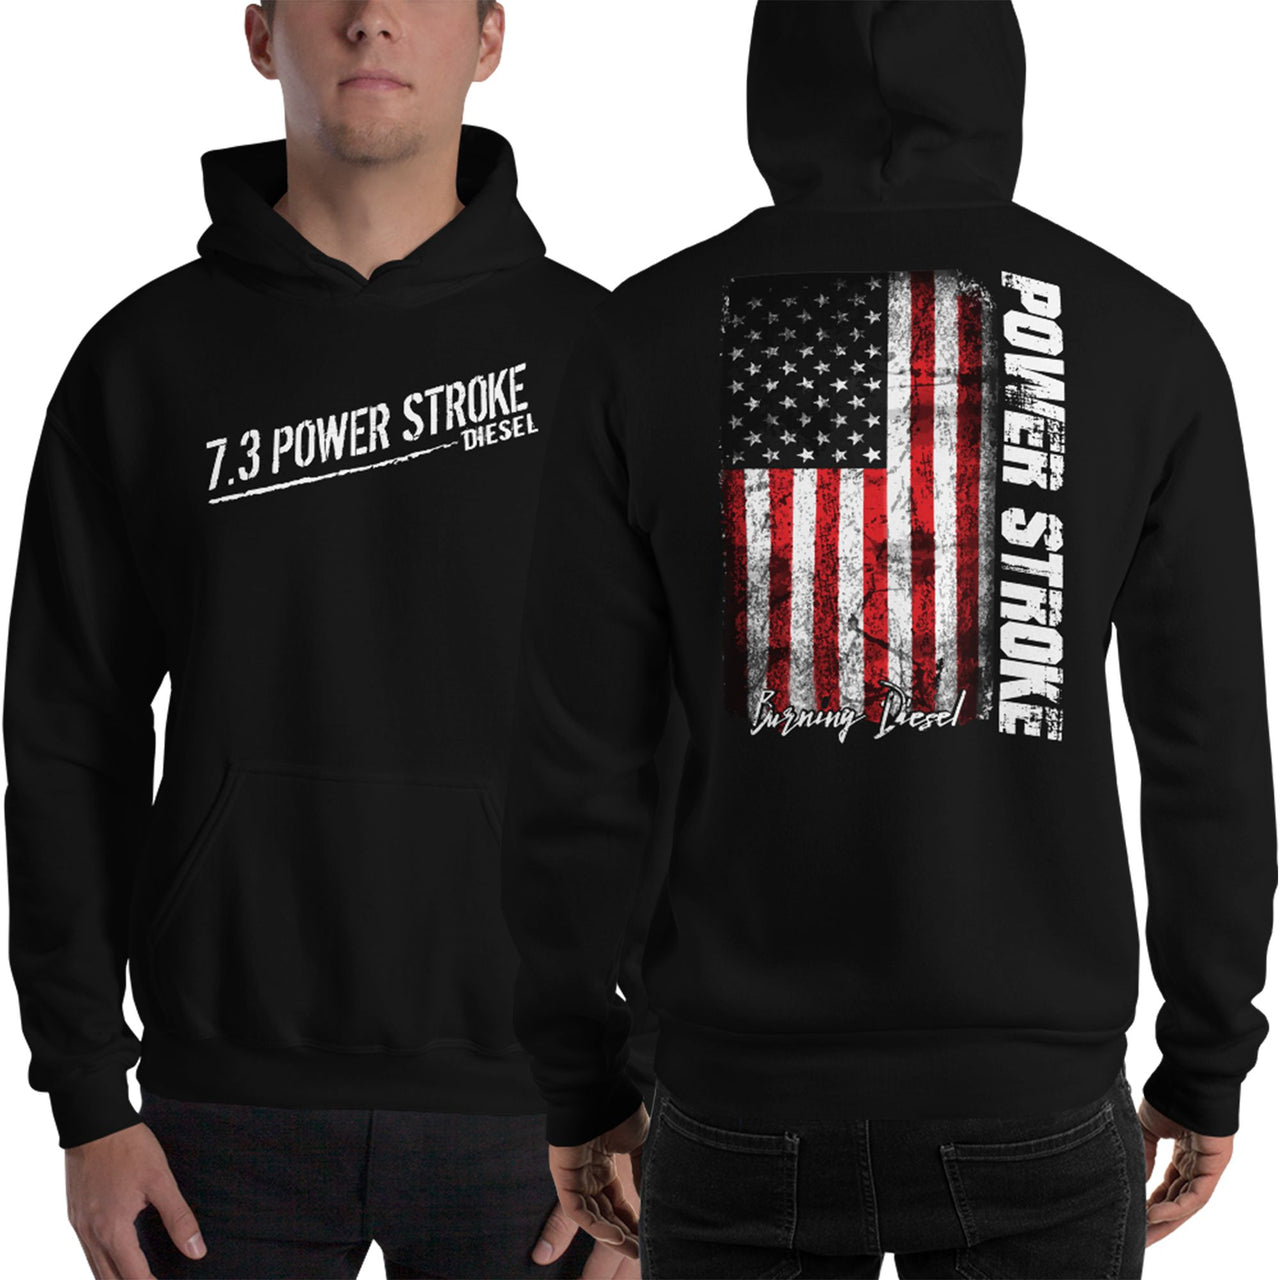 7.3 Power Stroke Diesel Hoodie, American Flag Sweatshirt modeled n black